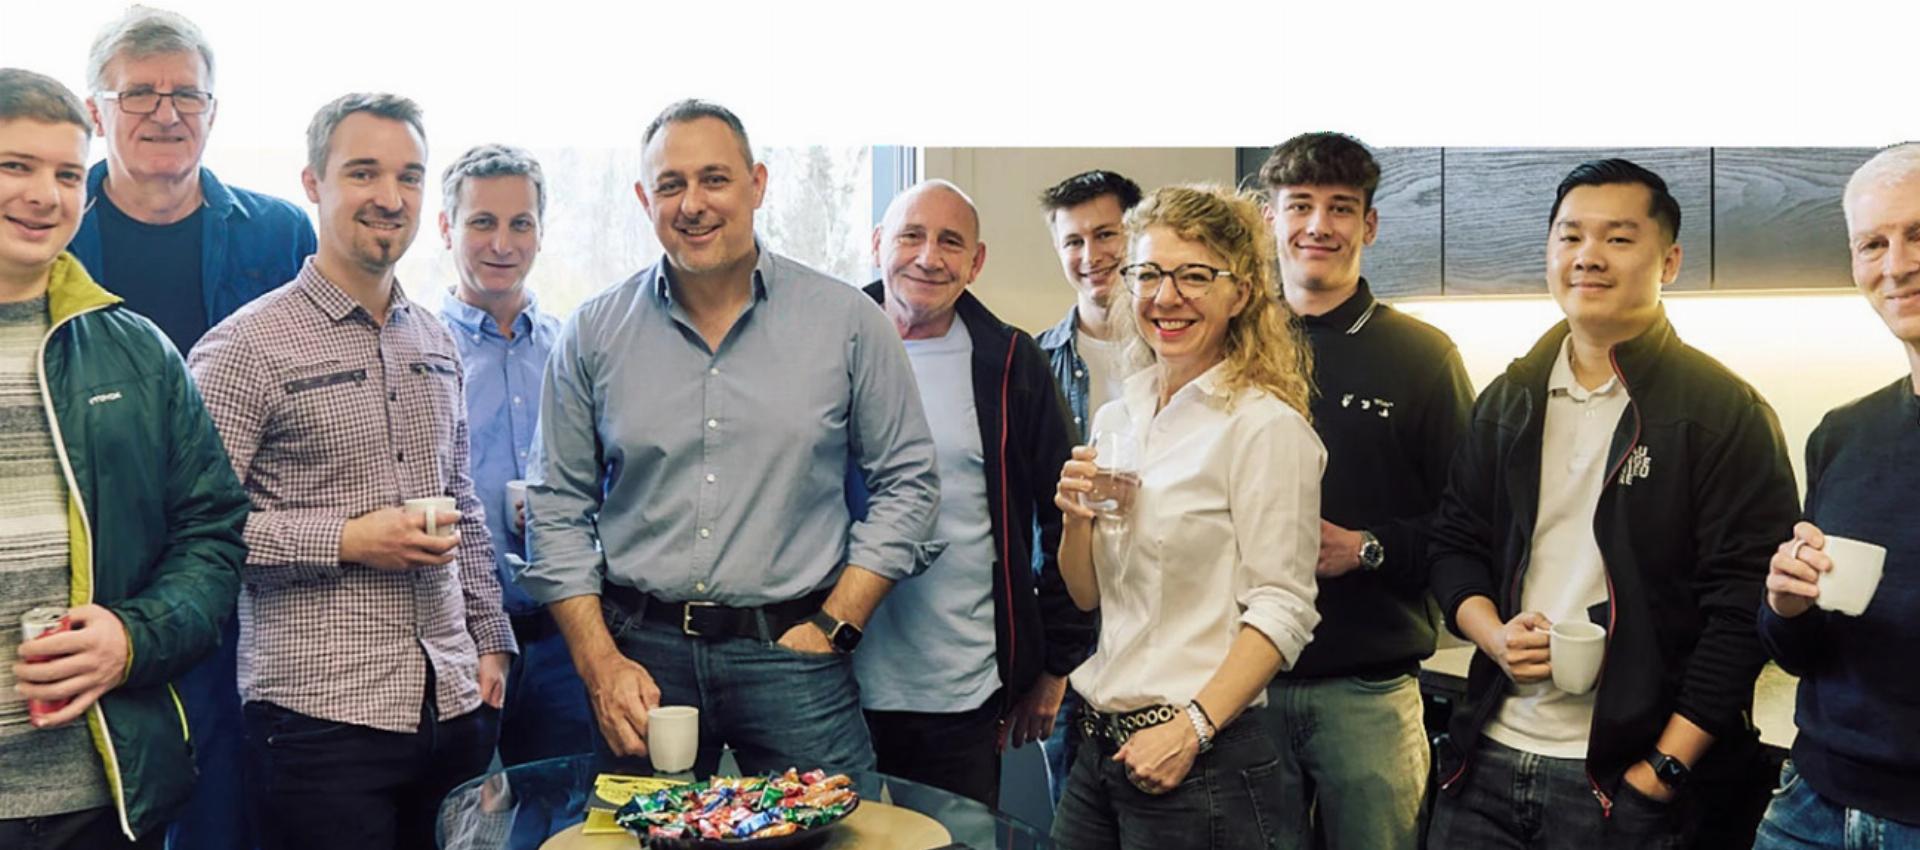 Das junge Unternehmen von Steven Keller (Fünfter von links) und Simone Keller ist gut gestartet. Foto: zVg